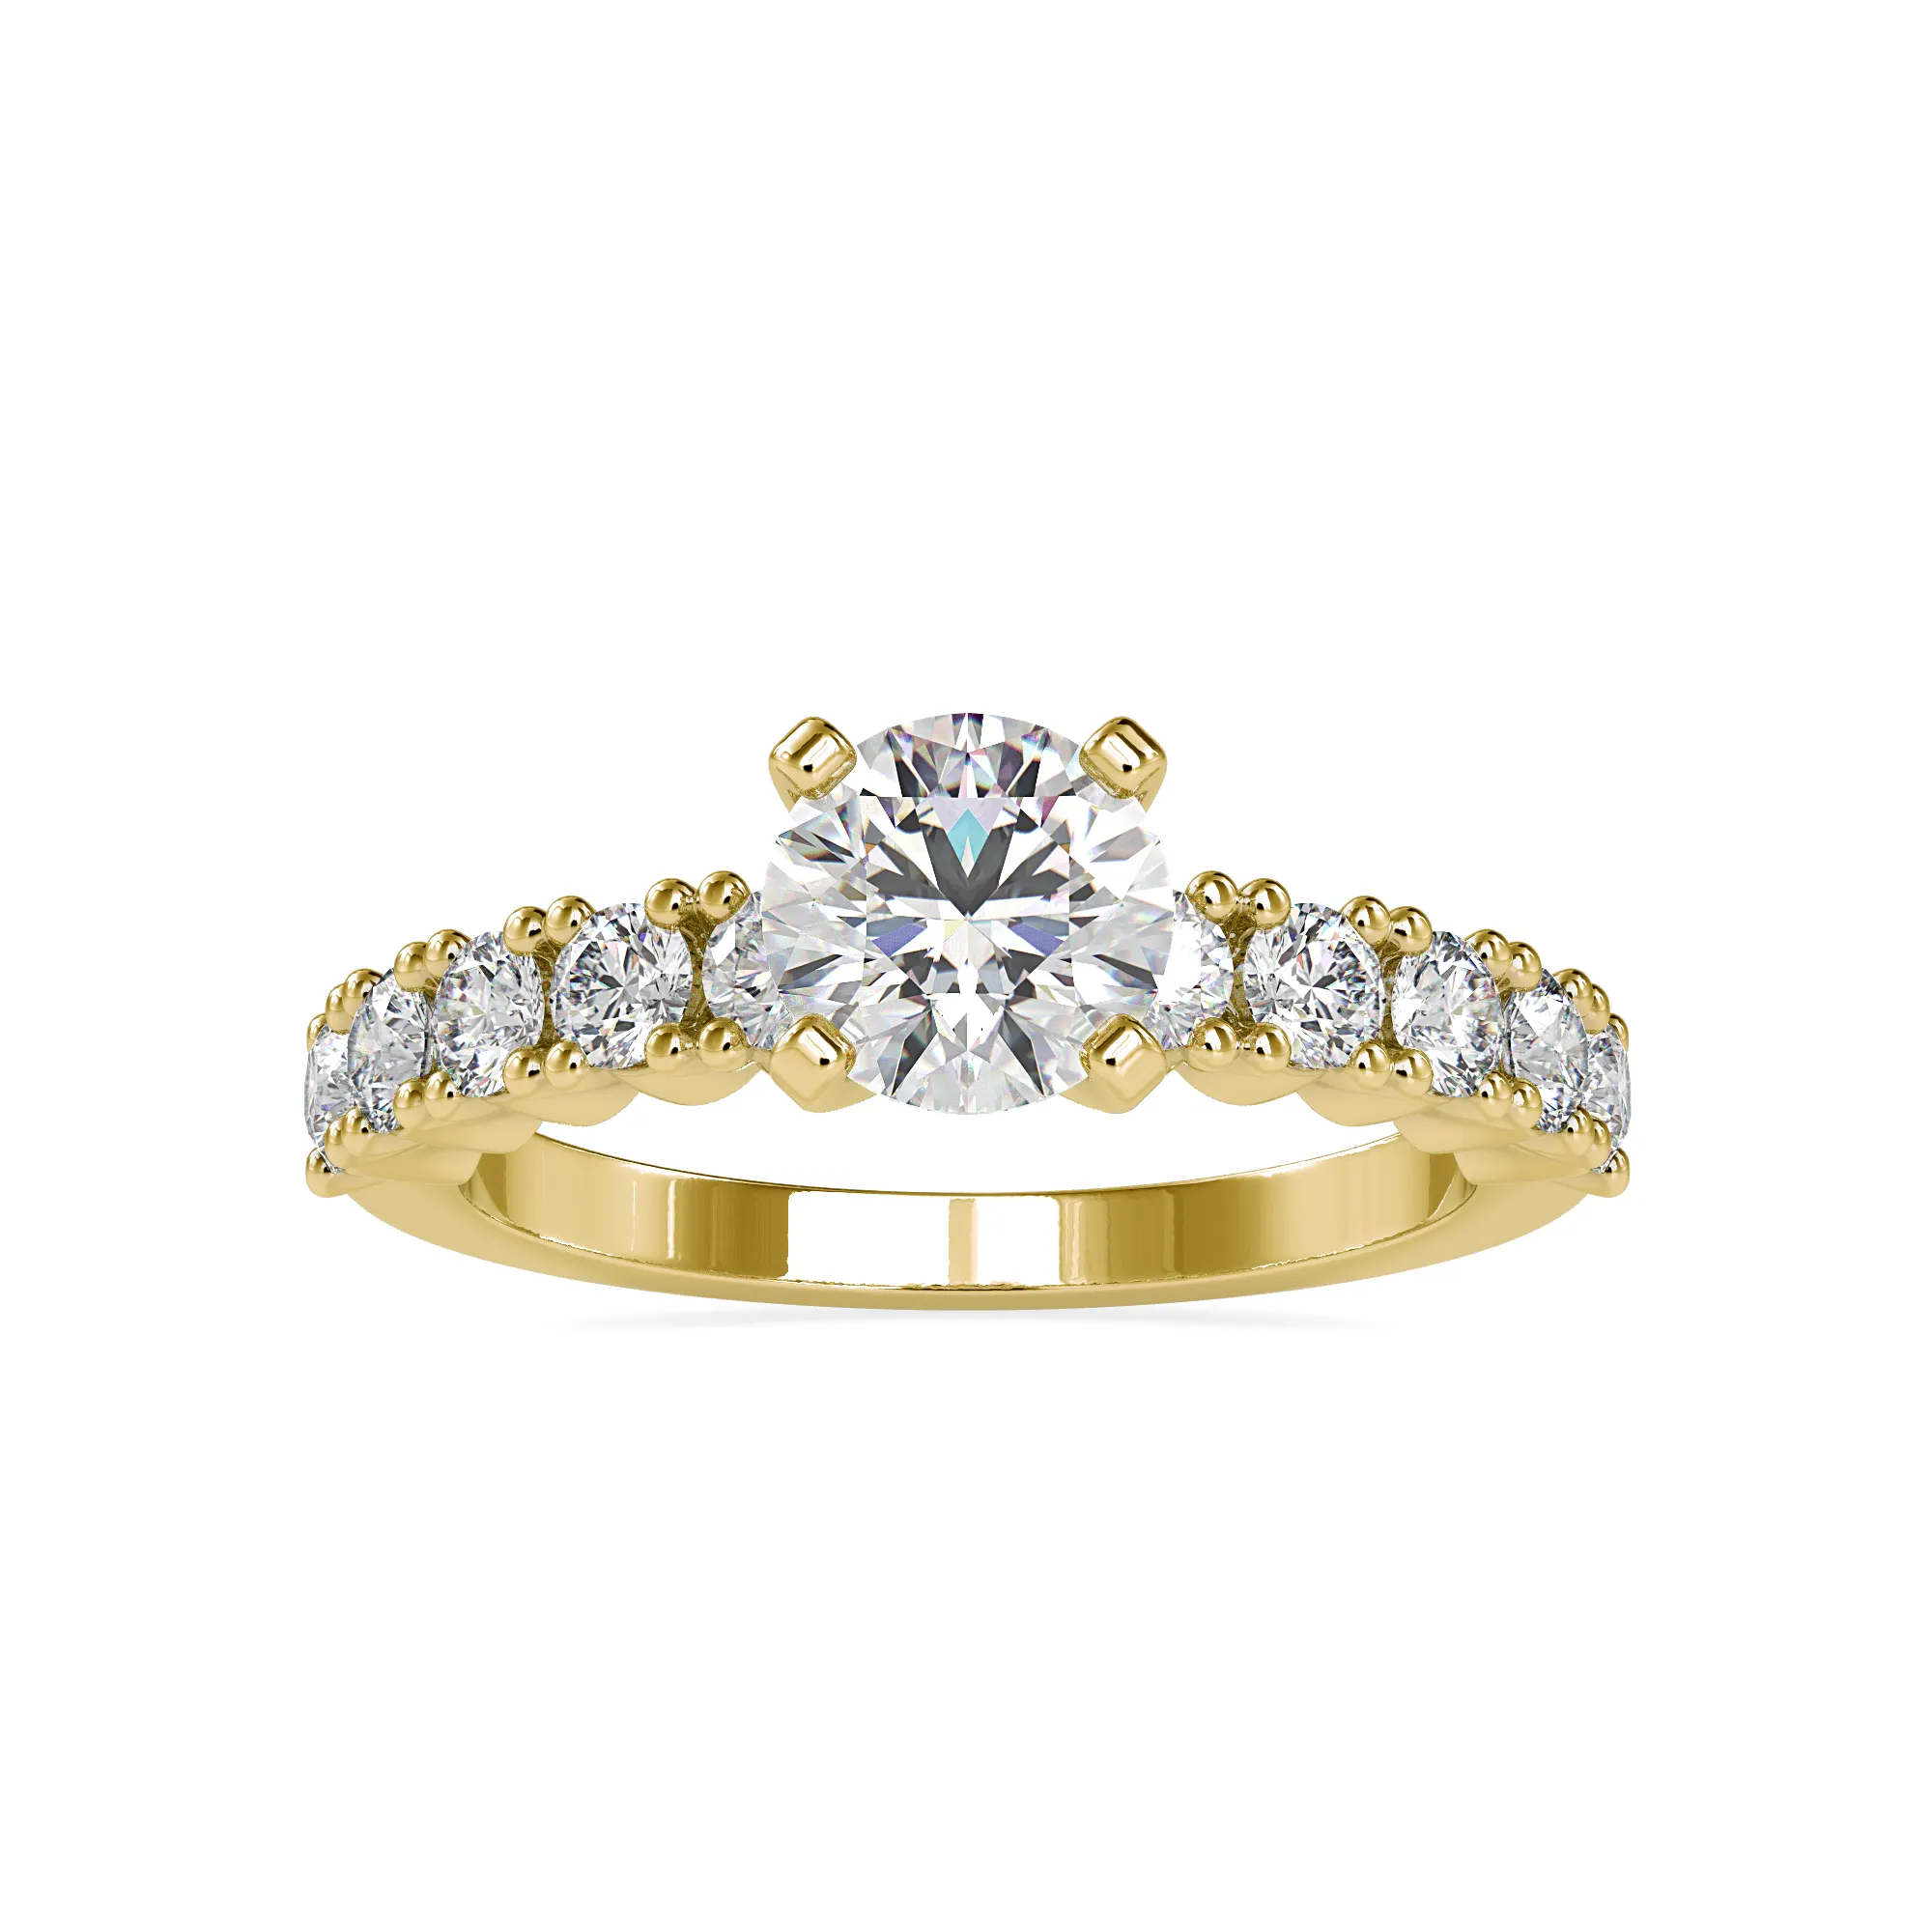 10K روز الذهب جولة قطع الماس خاتم الخطوبة الكلاسيكية خاتم الزواج مخصص مجوهرات فريدة أفضل المورد في السيدات مجوهرات